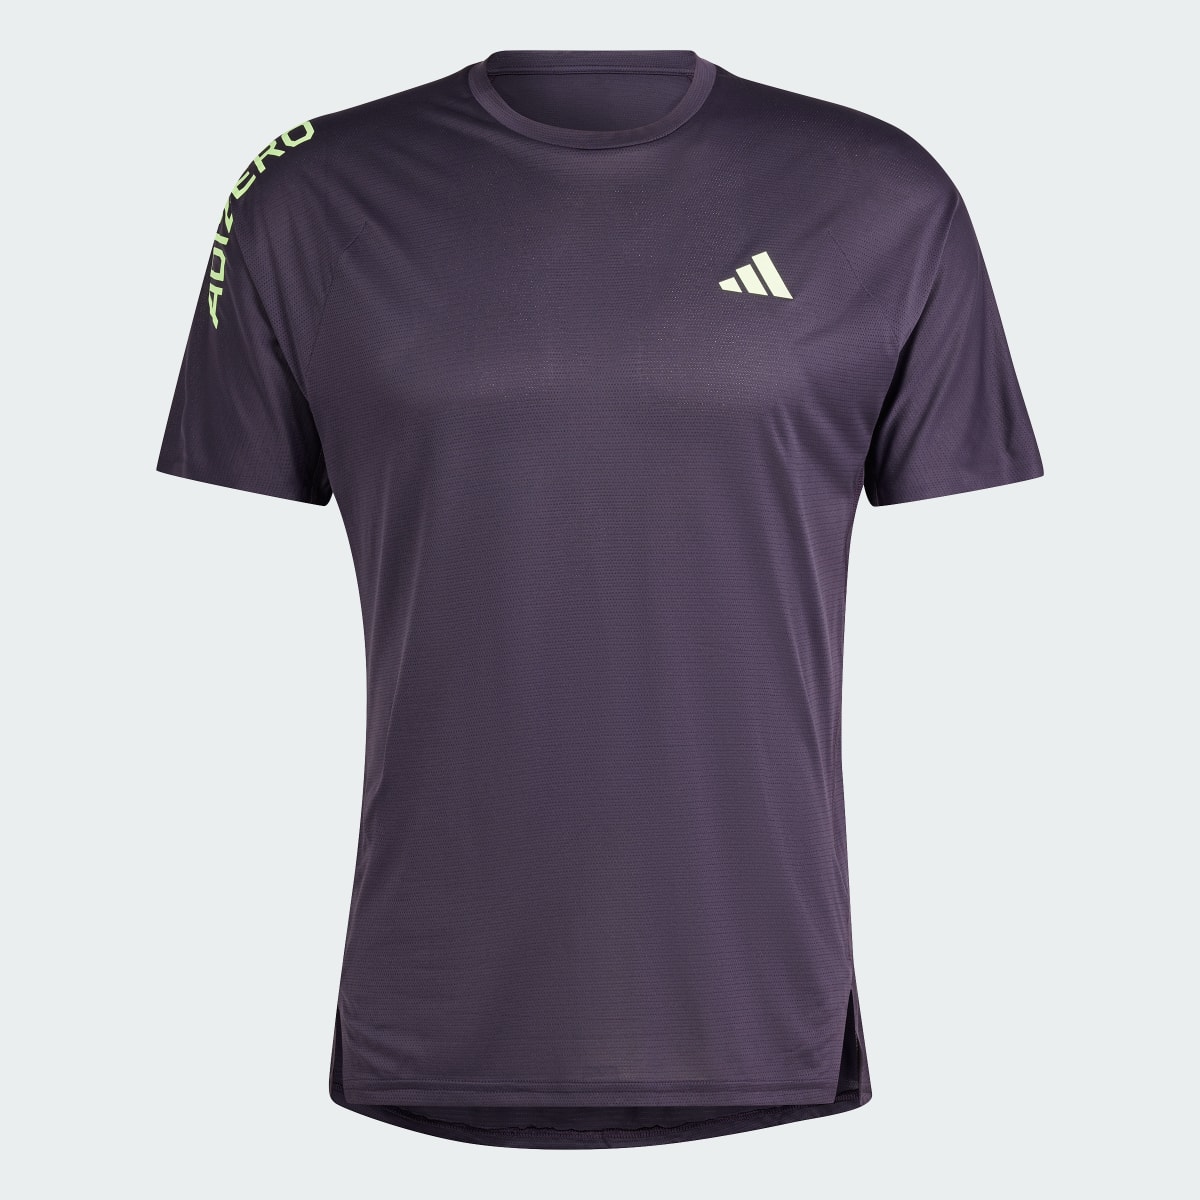 Adidas Adizero Running T-Shirt. 5